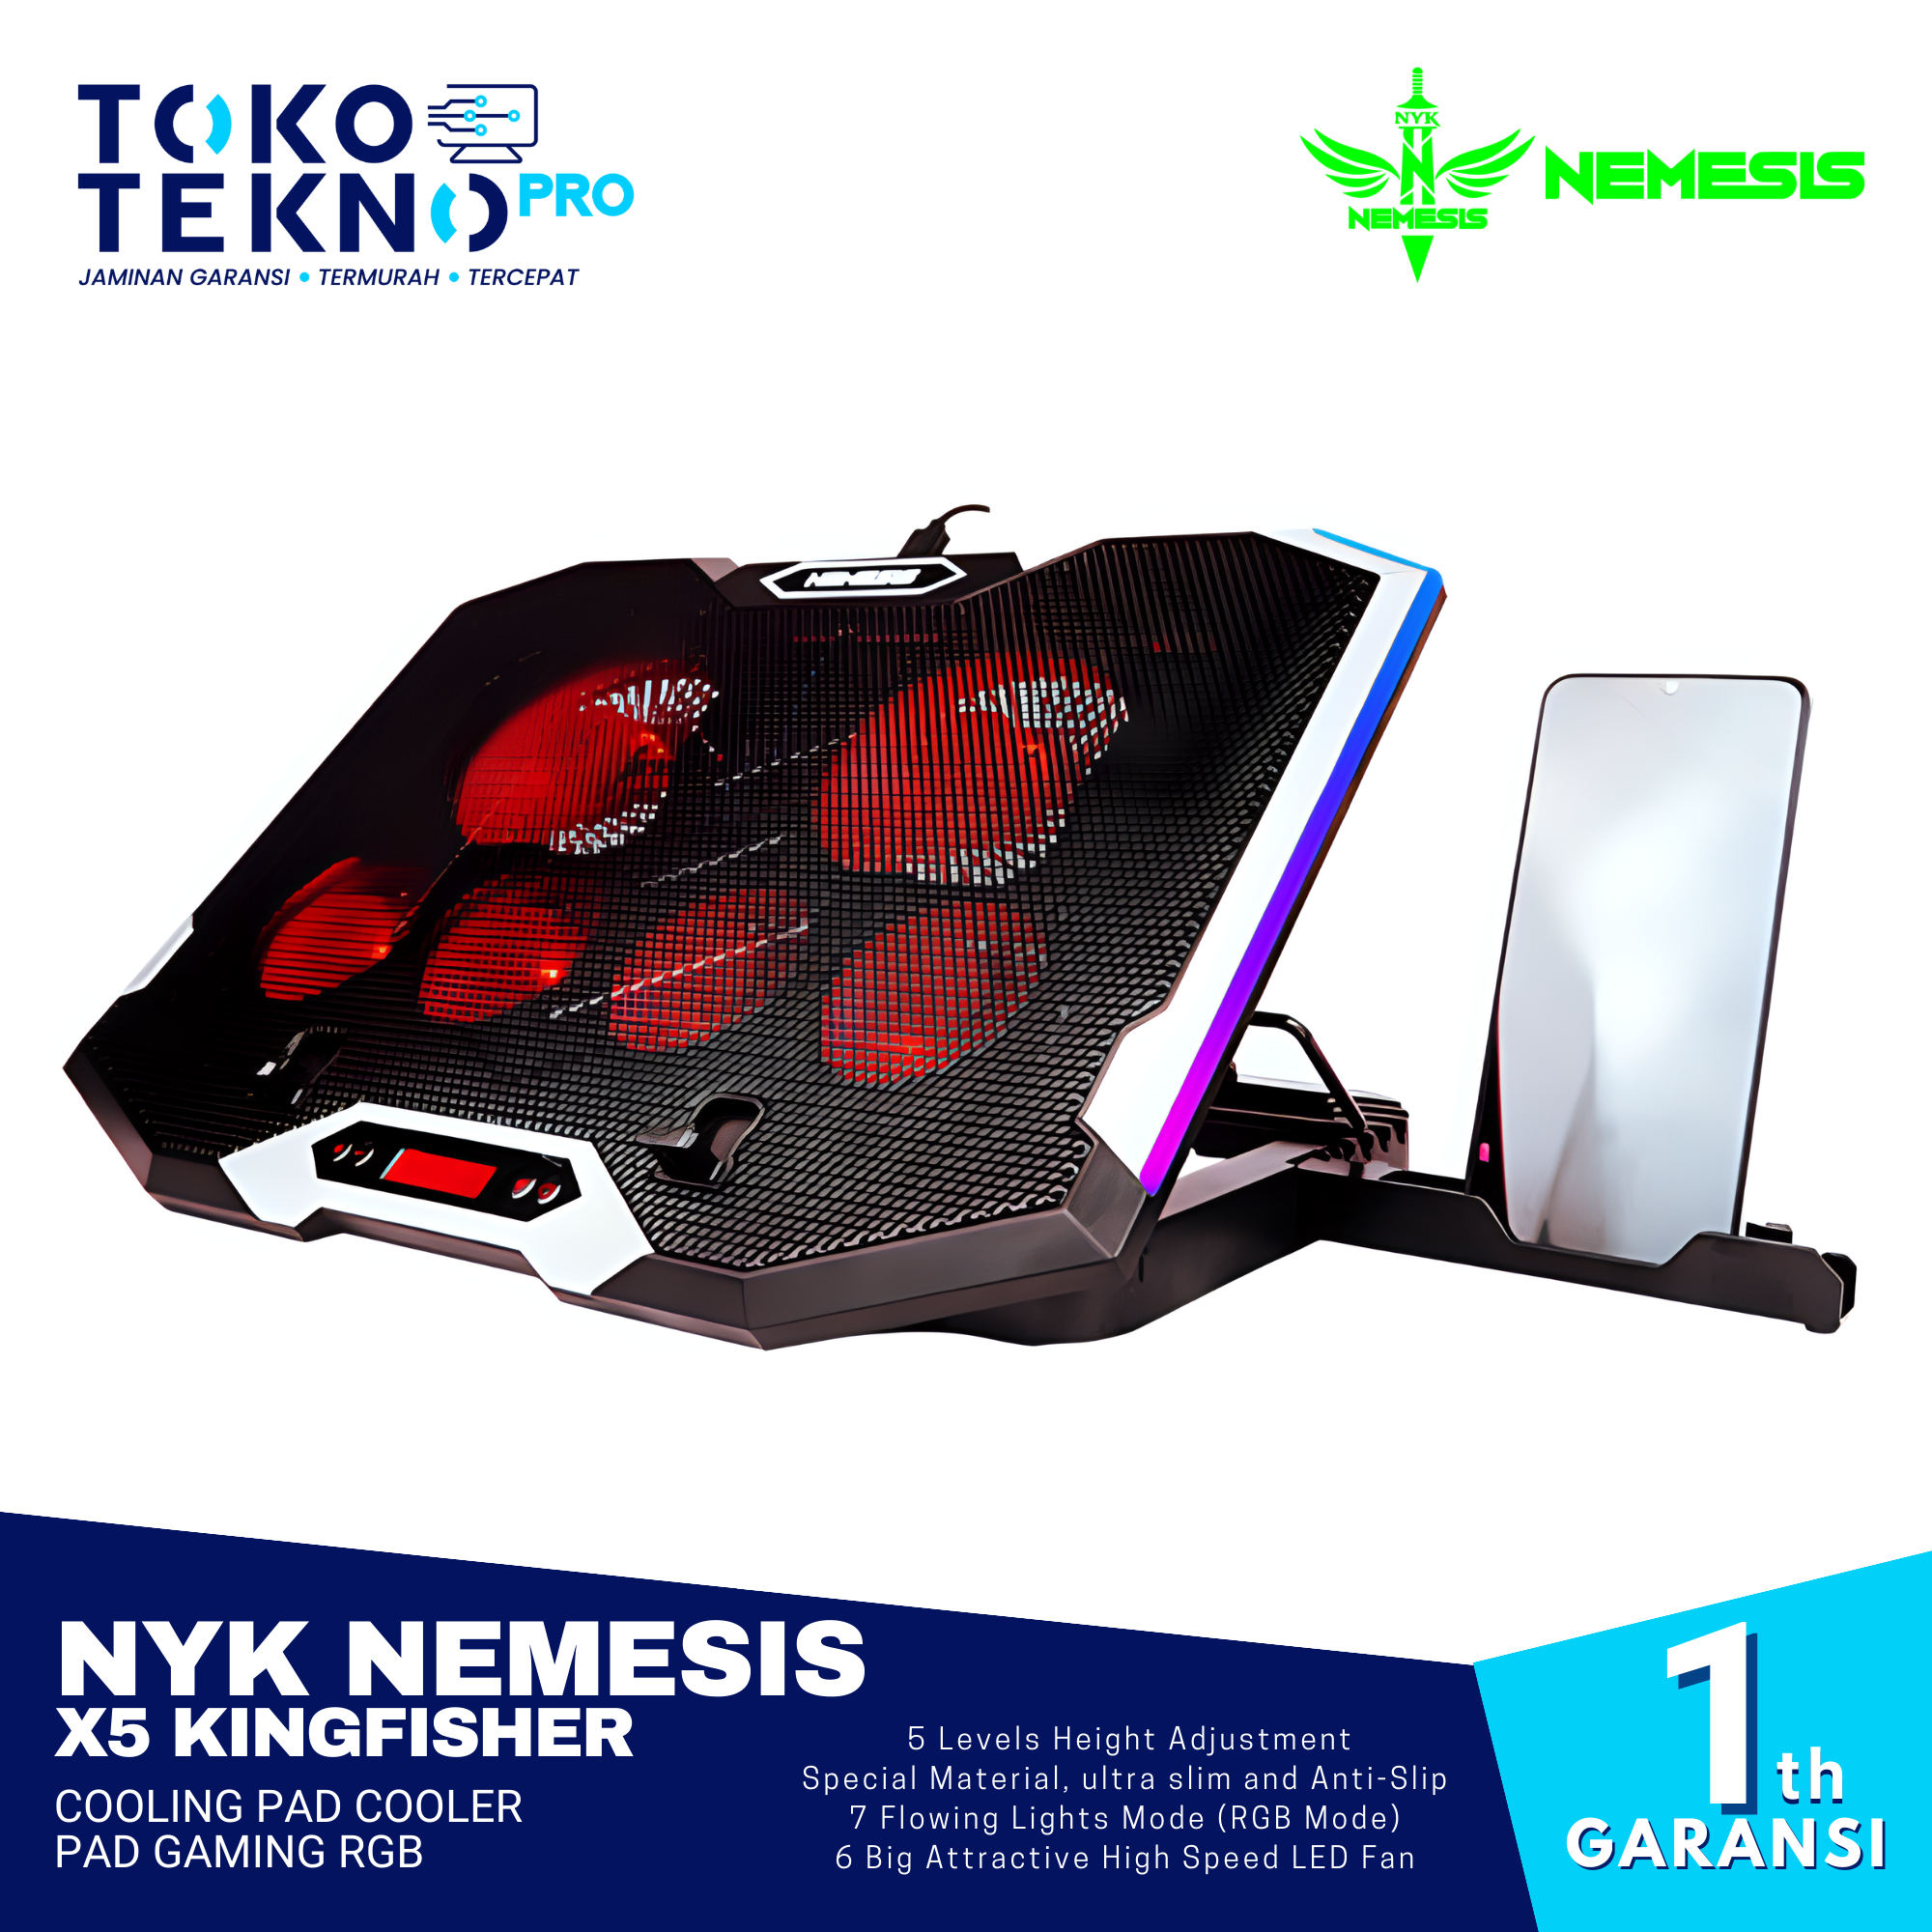 NYK Nemesis X5 Kingfisher Cooling Pad Cooler Pad Gaming RGB